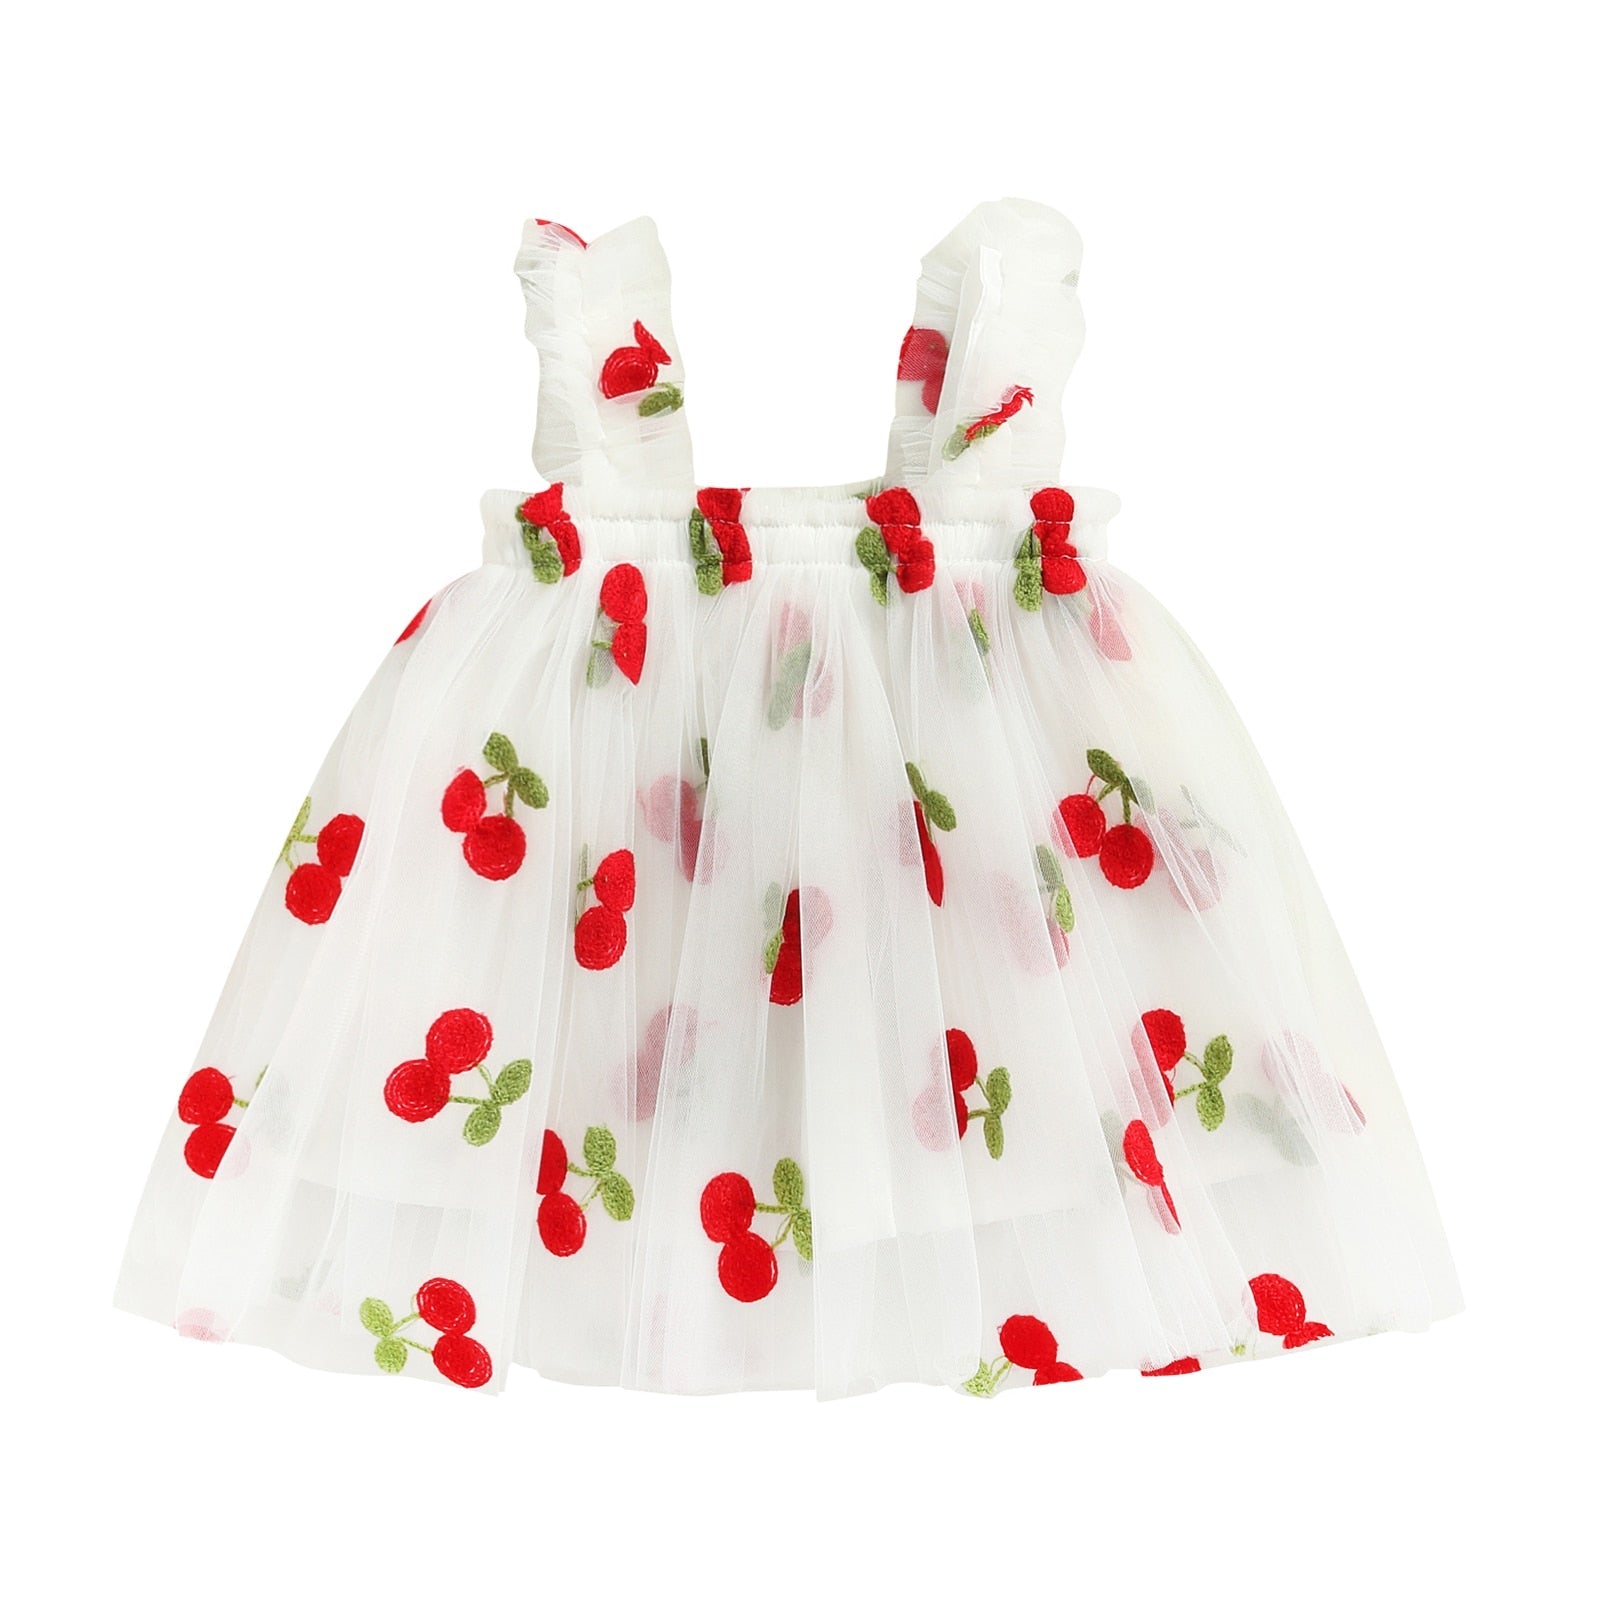 Vestido Infantil Tule Estampas vestido Loja Click Certo Branco Cereja 2-3 anos 48cm 